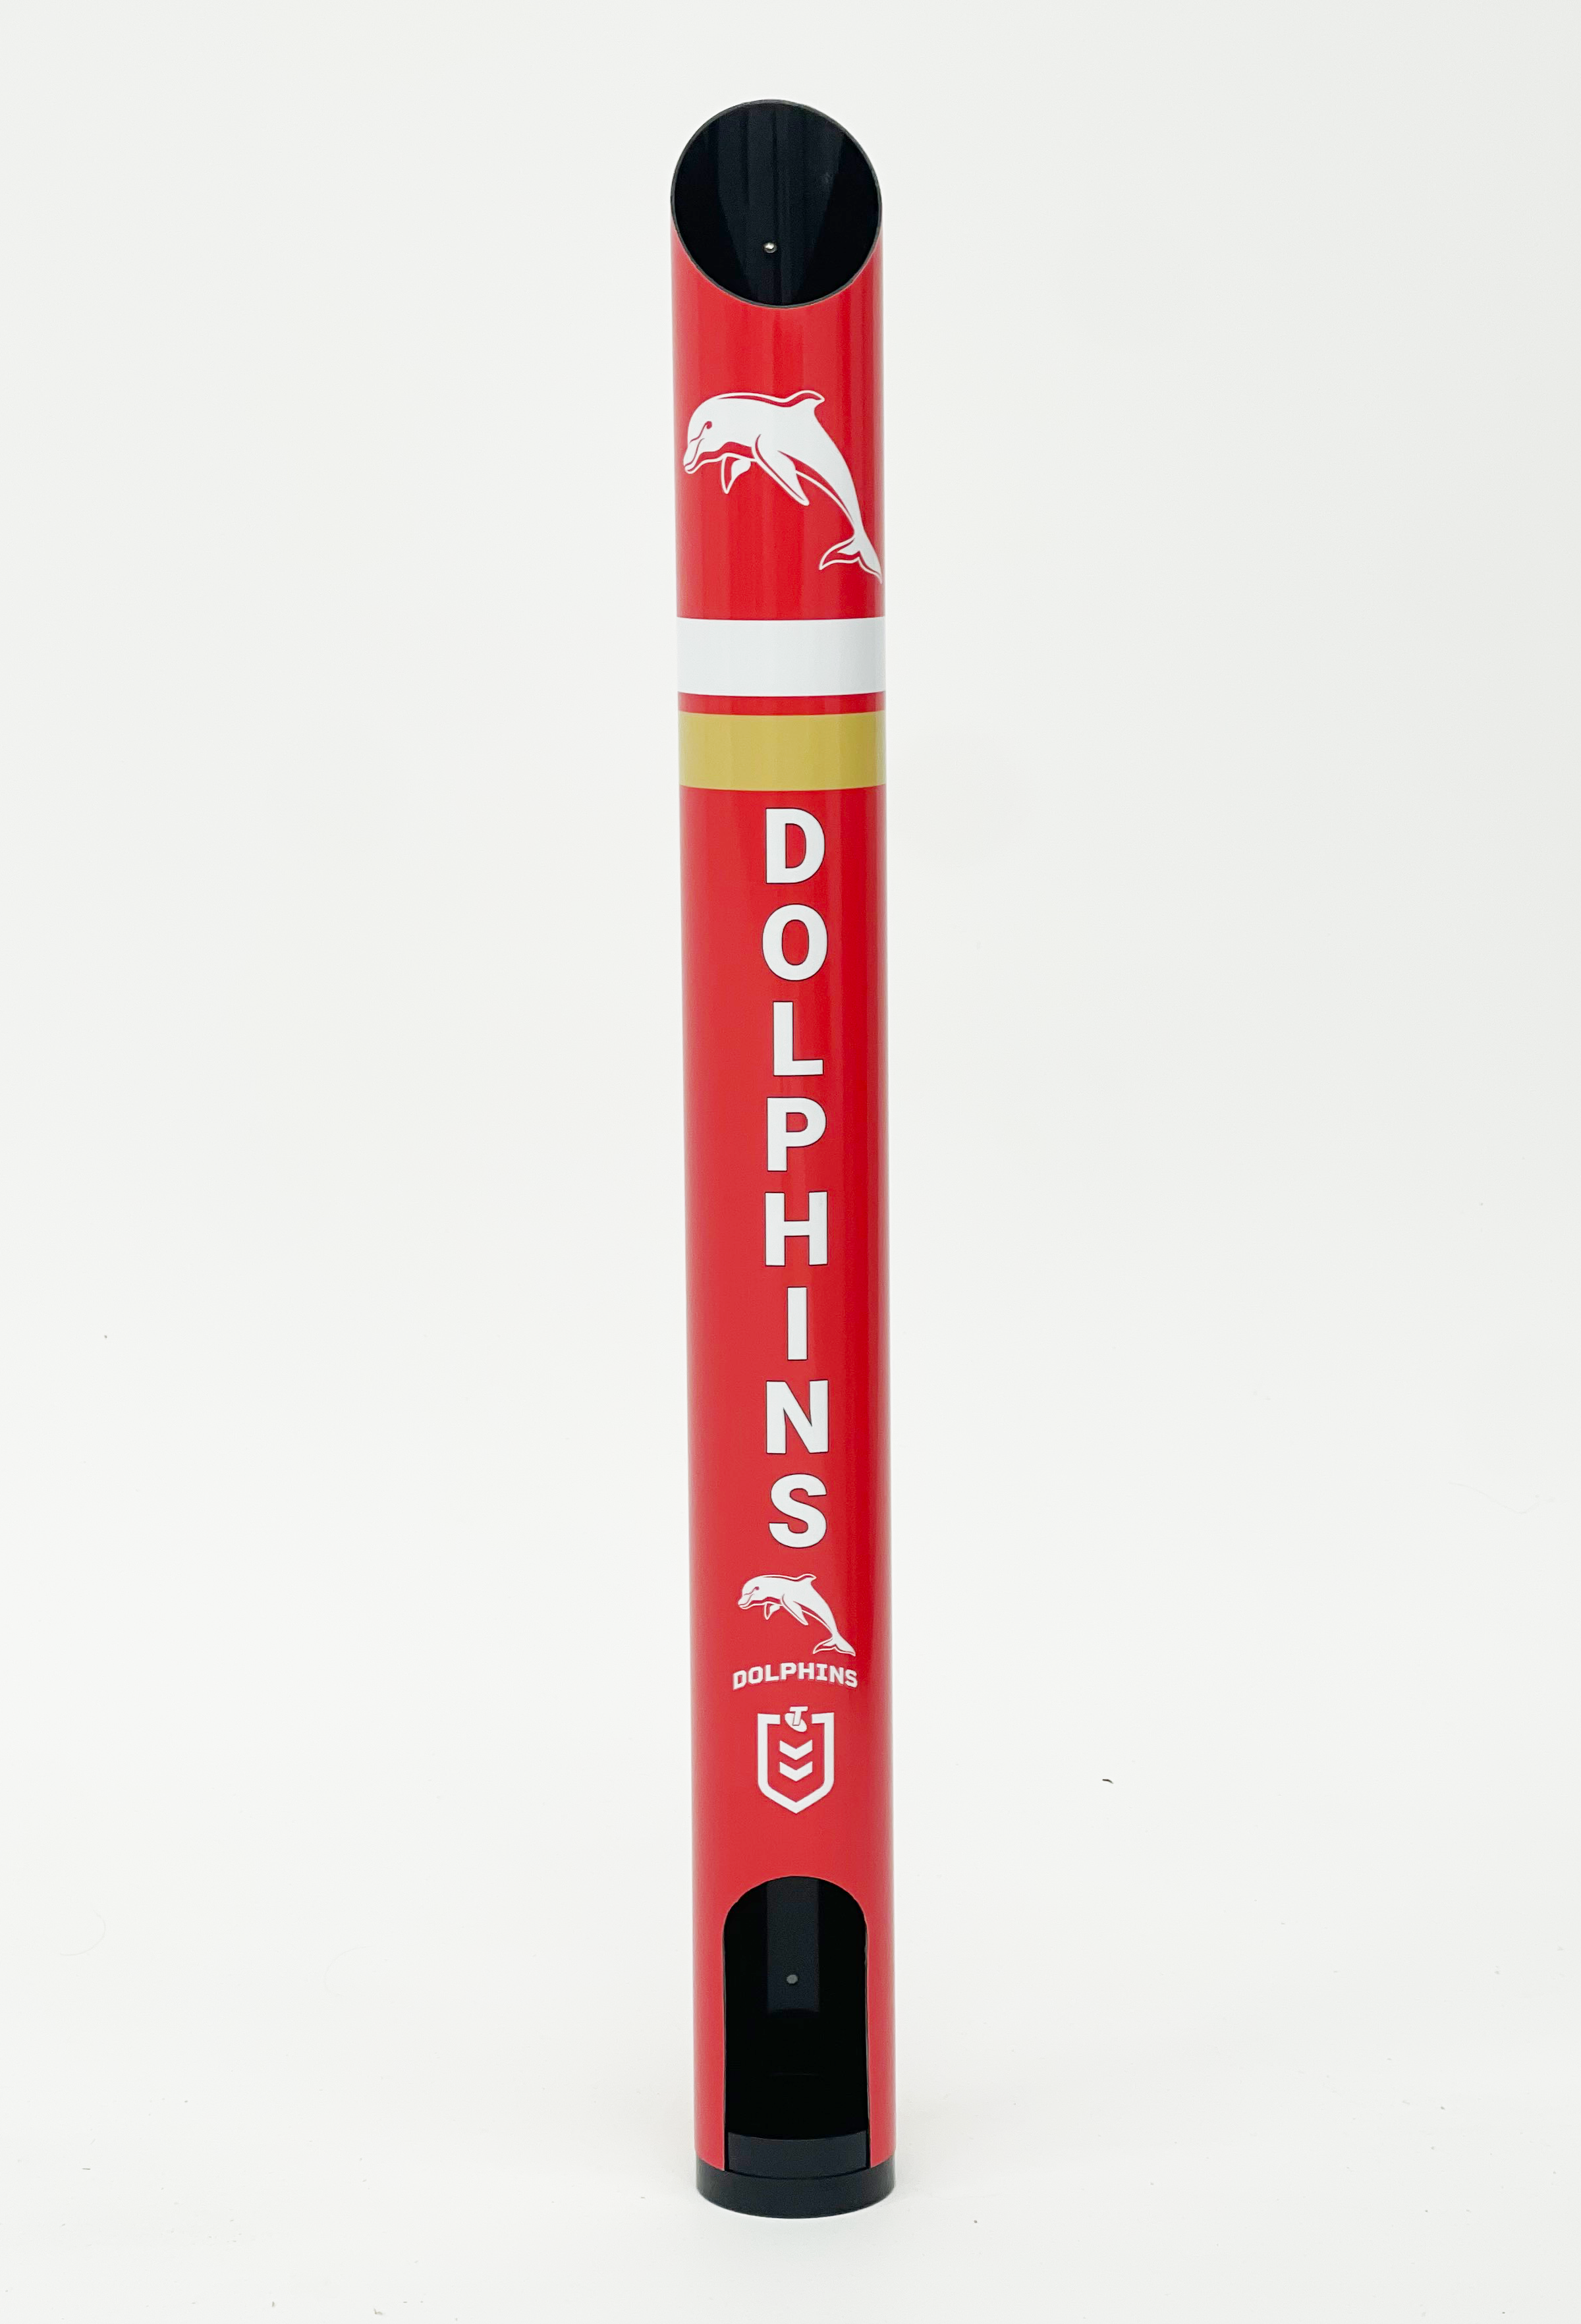 Dolphins NRL Stubby Holder Dispenser